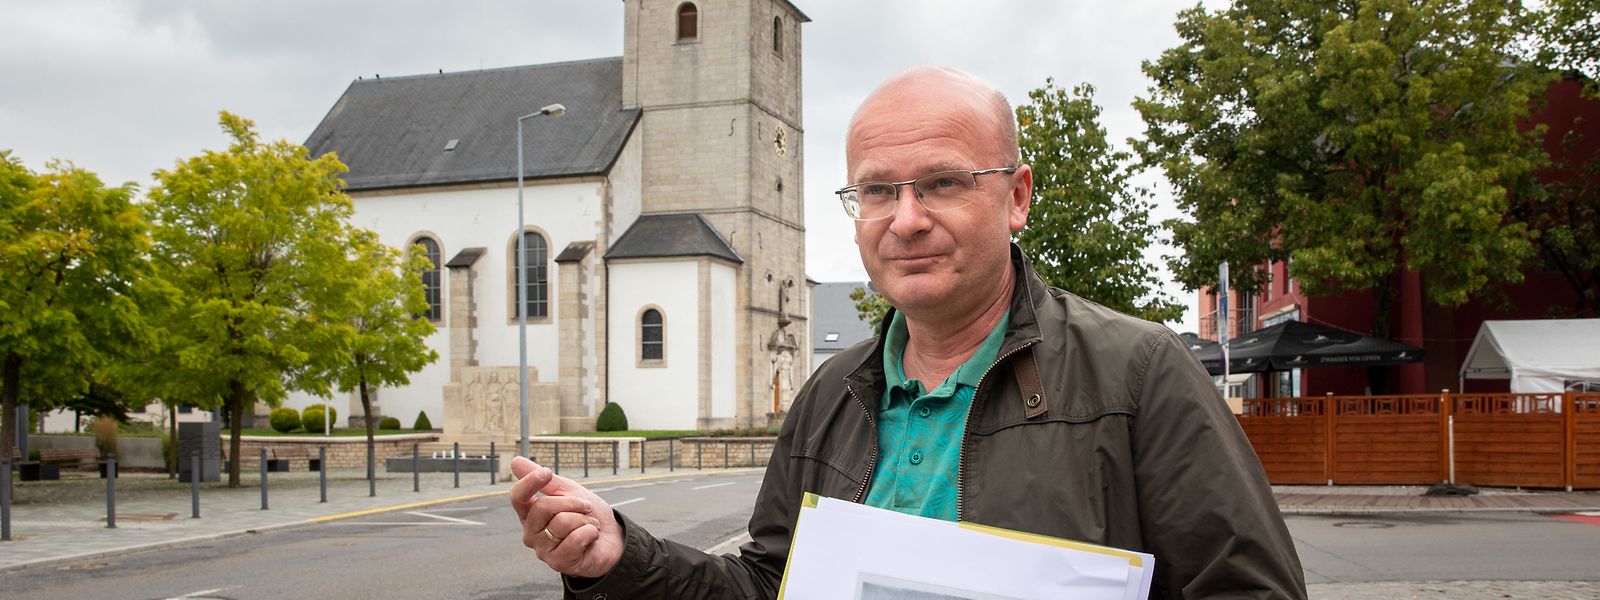 Lokalhistoriker Guy Mathieu gibt Auskunft über das historische Monnerich.